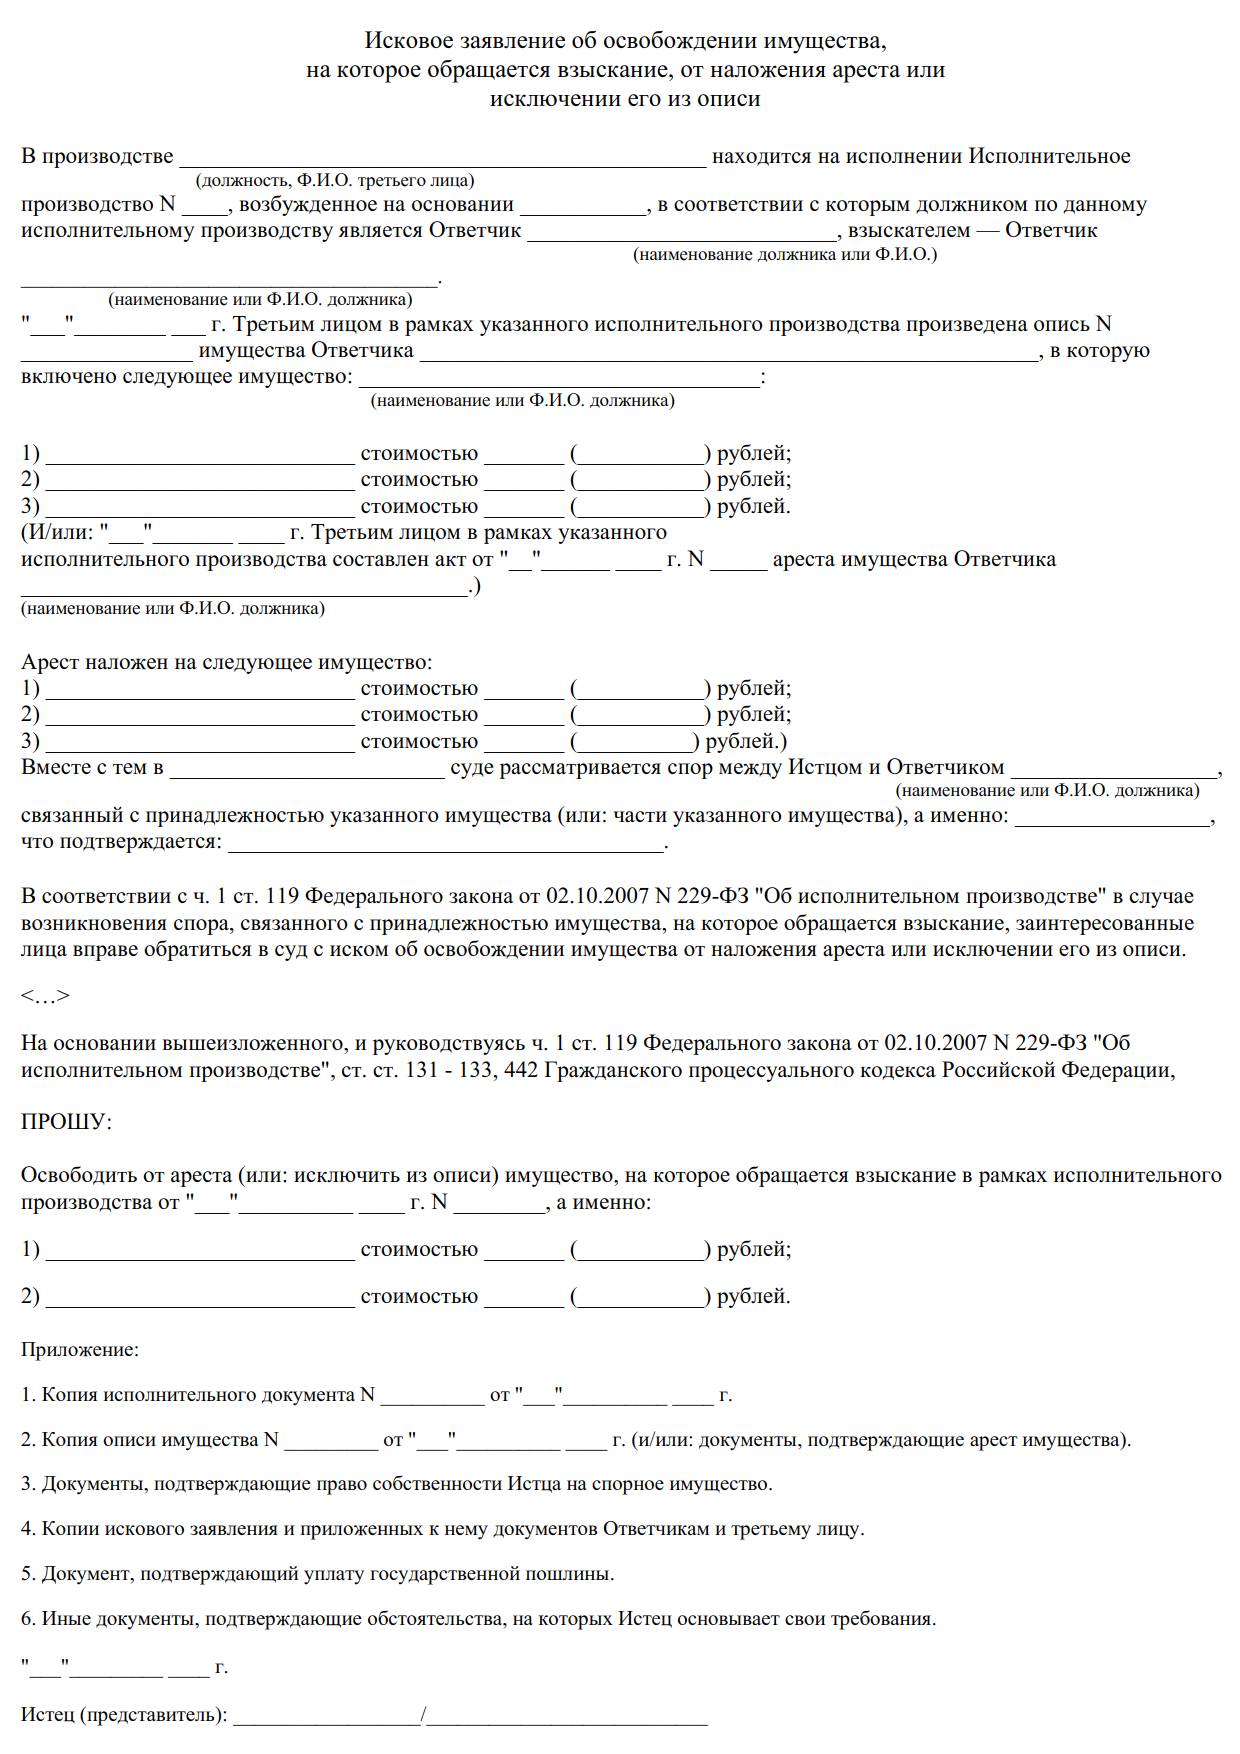 Запрет регистрационных действий для исполнительного производства указан в постановлении Пленума Верховного Суда Российской Федерации